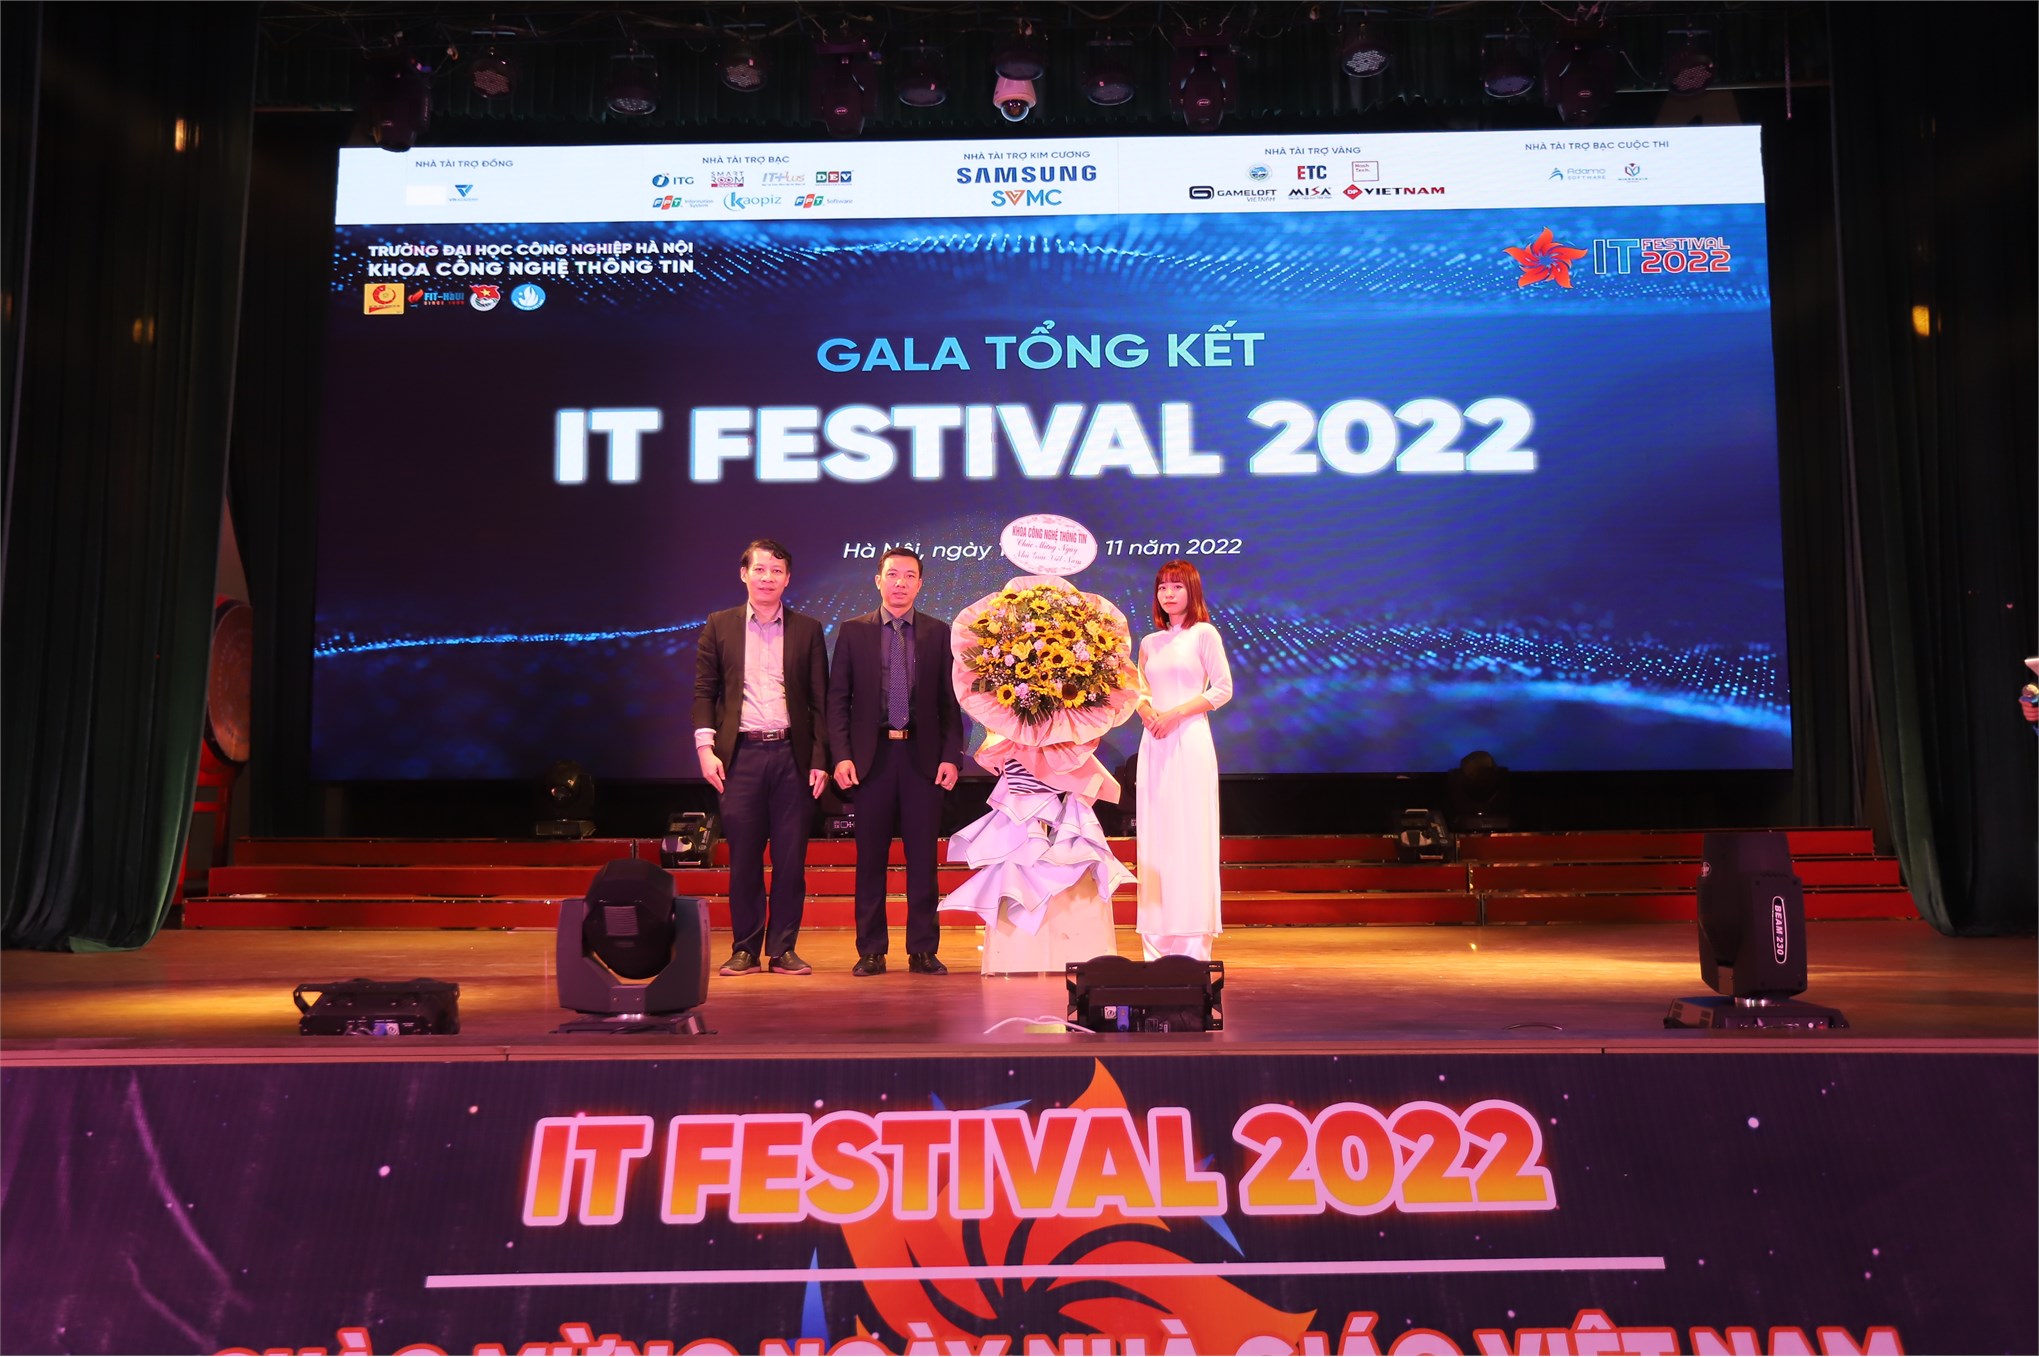 Ấn tượng và bùng cháy đêm Gala tổng kết IT Festival 2022 